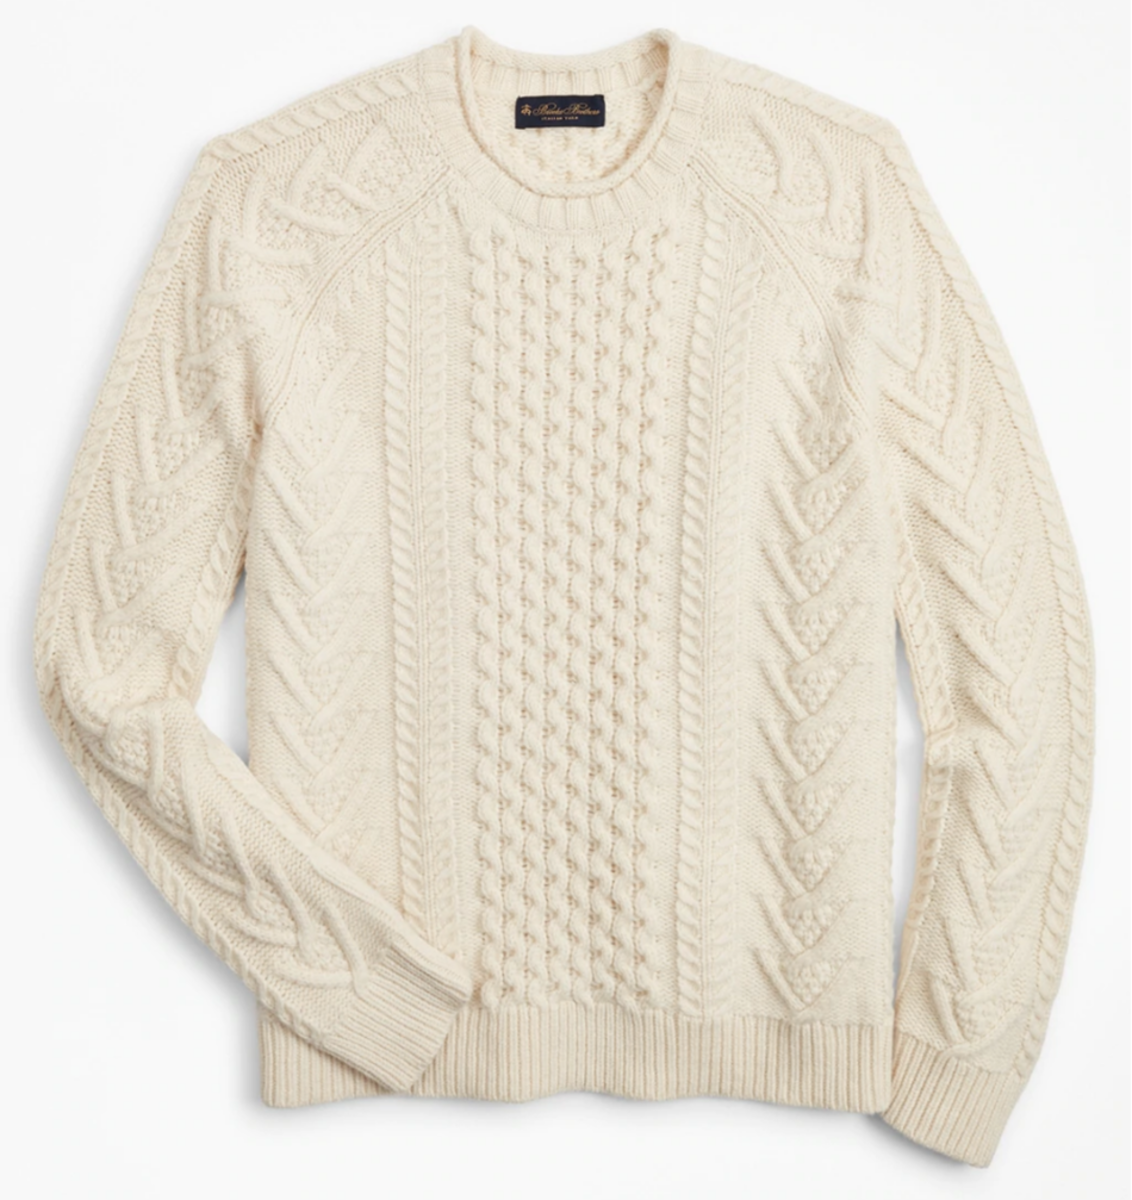 Dress Like Chris Evans With This Amazing Merino Wool Sweater - Men's ...